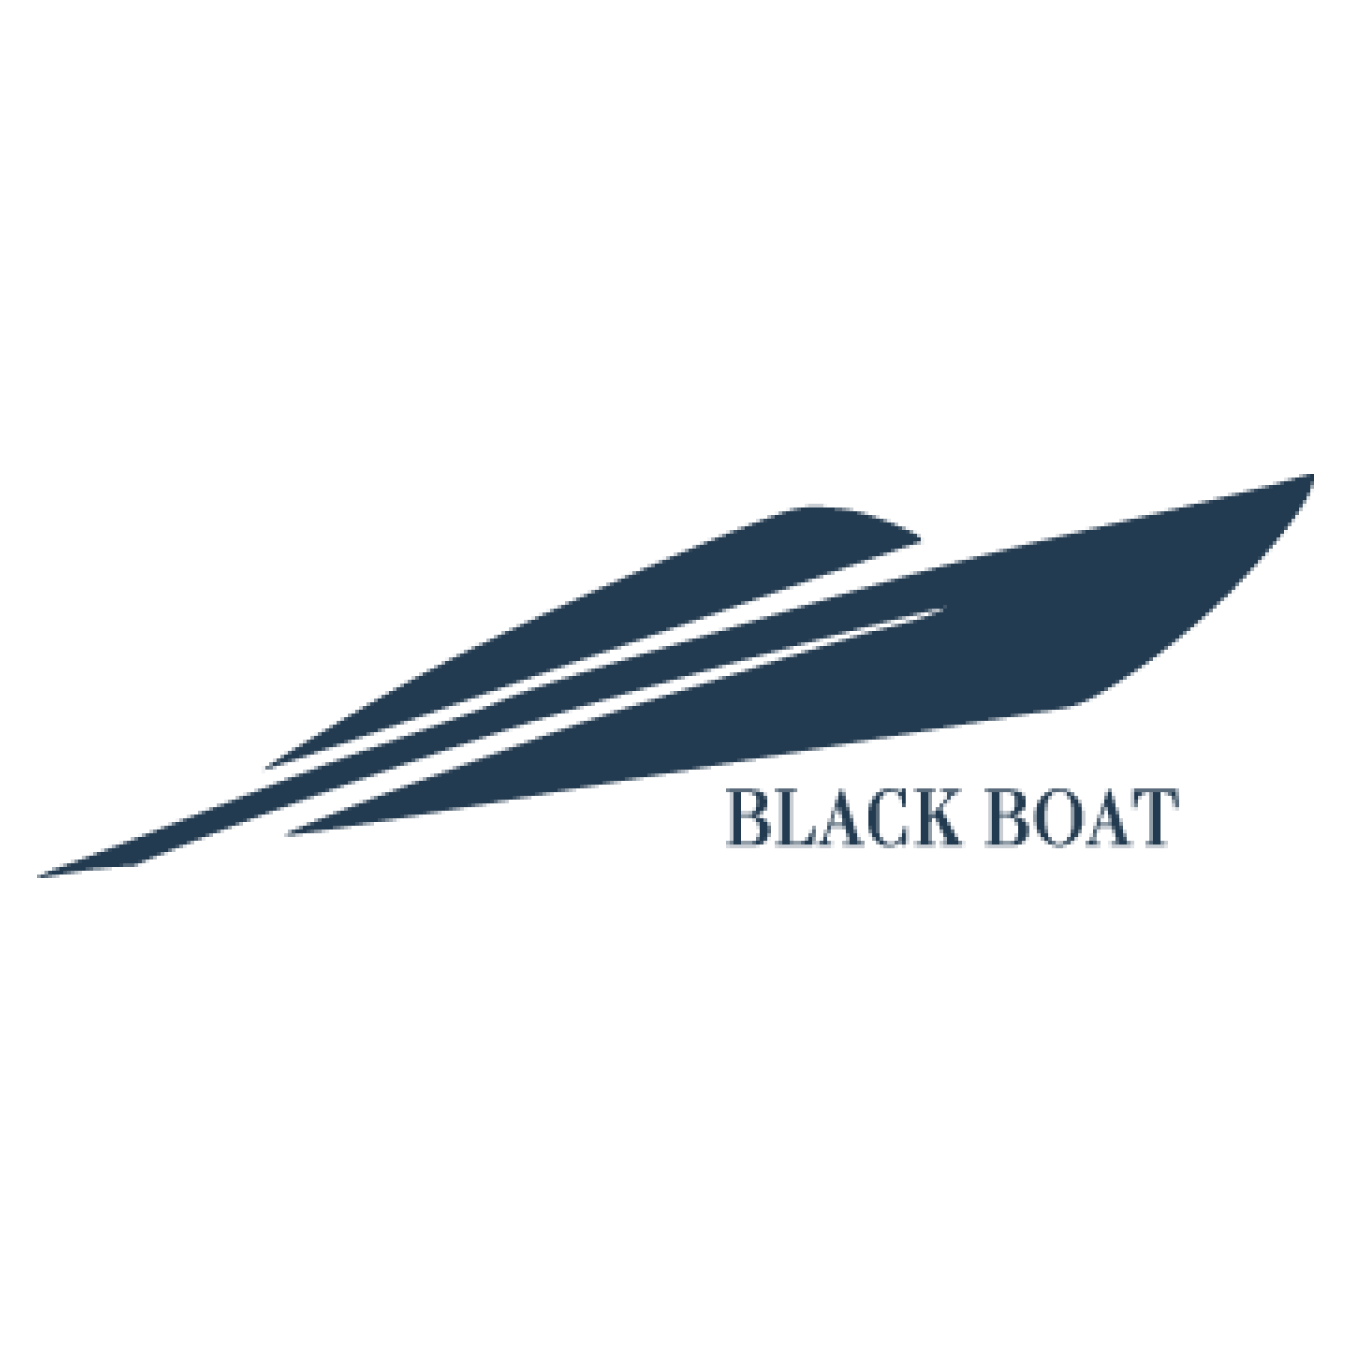 Black Boat